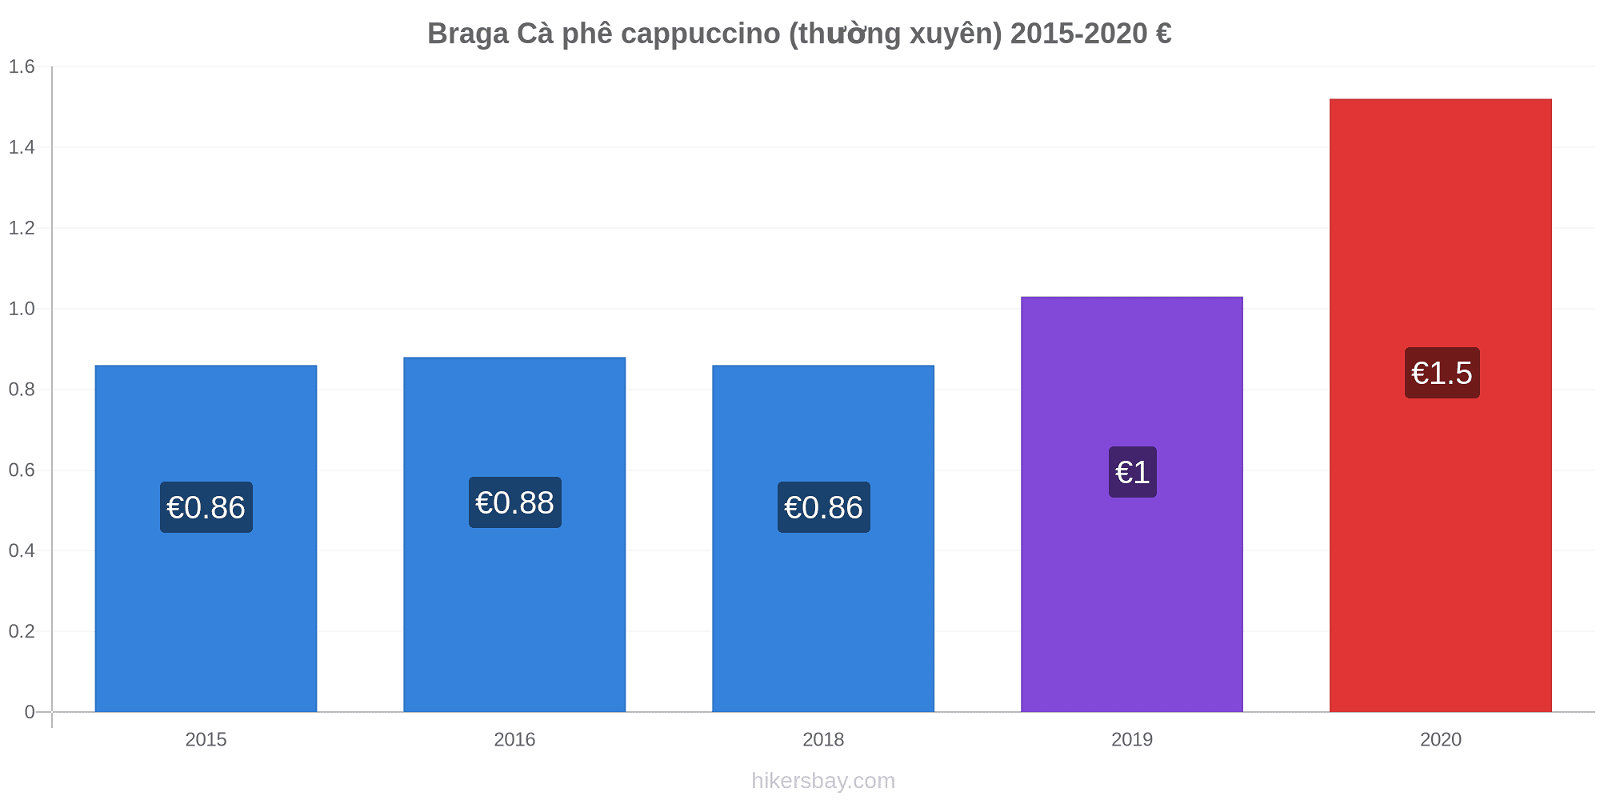 Braga thay đổi giá Cà phê cappuccino (thường xuyên) hikersbay.com